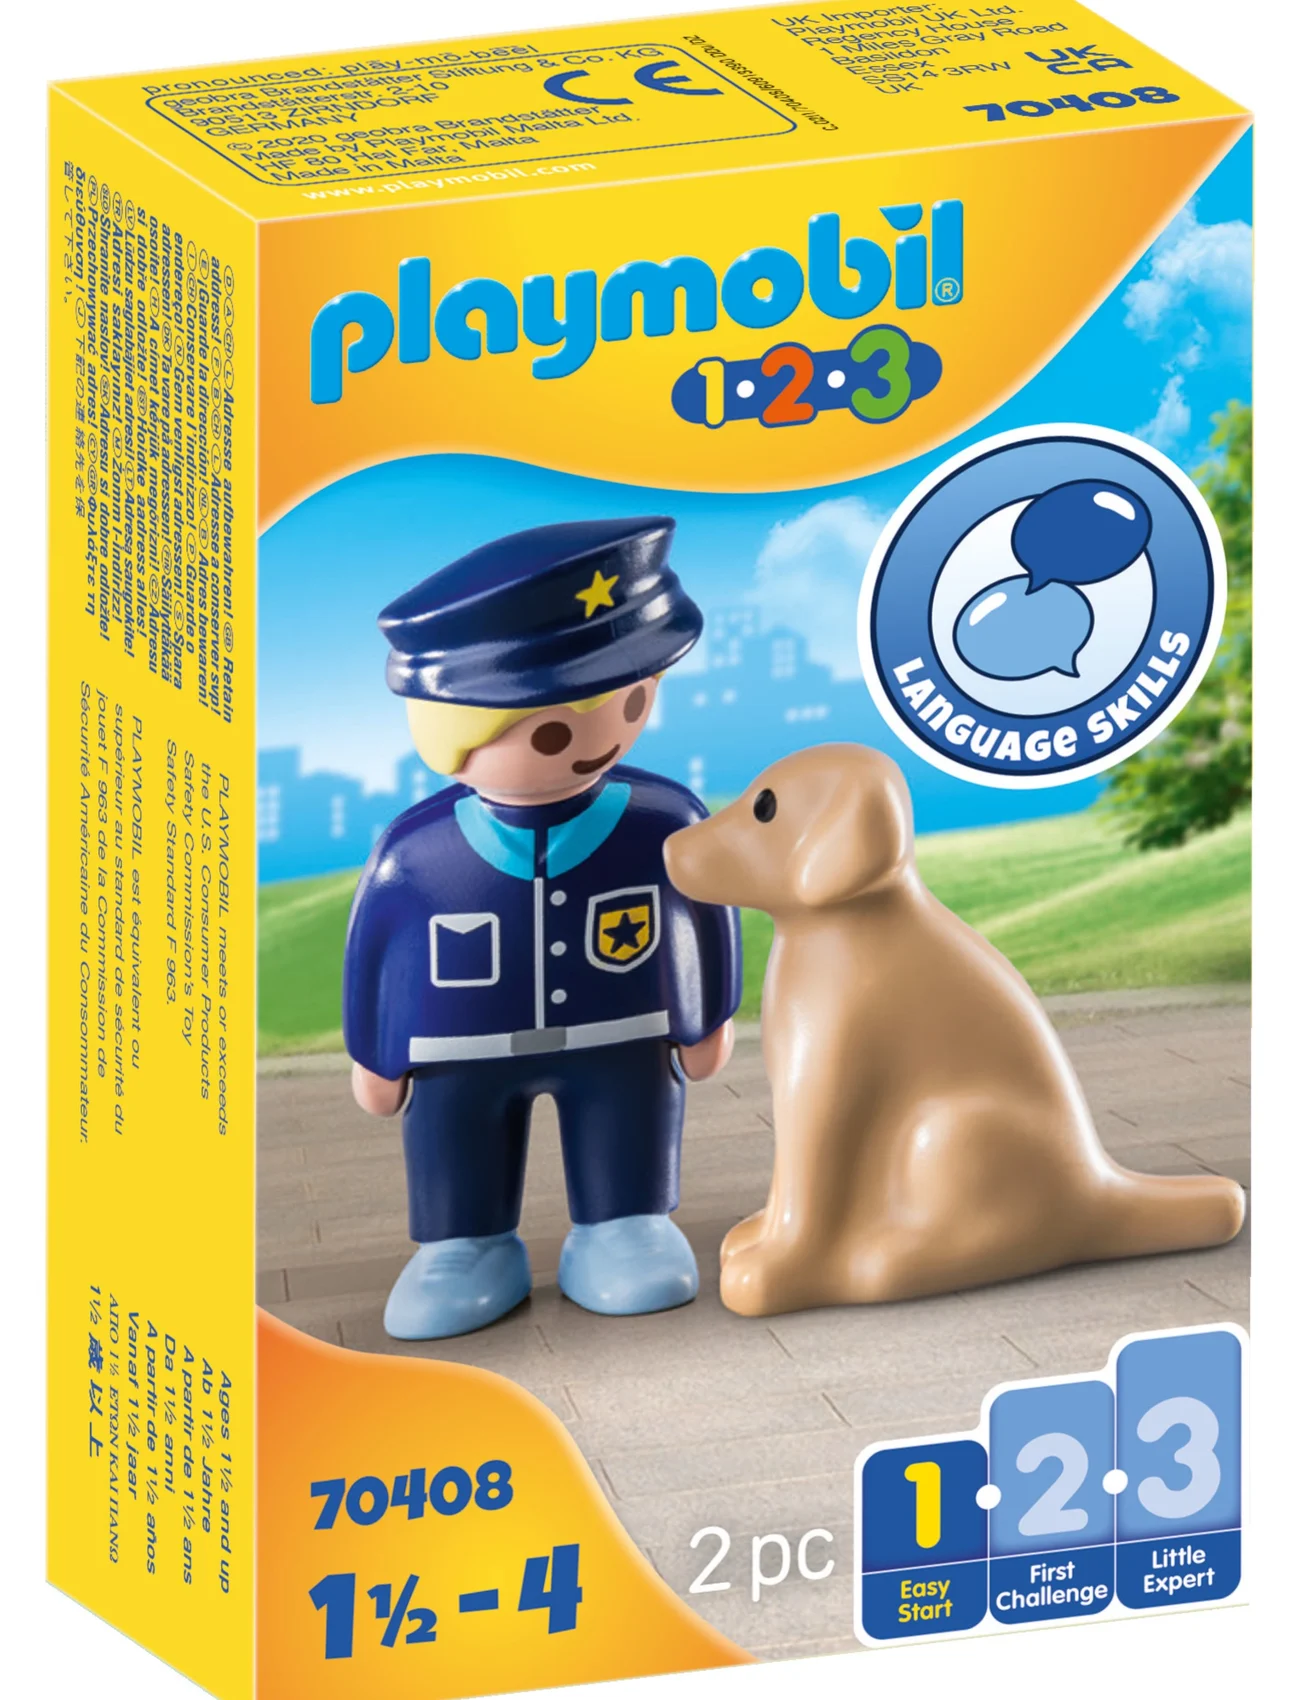 PLAYMOBIL - PLAYMOBIL 1.2.3 Polis med hund - 70408 - playmobil 1.2.3 - multicolored - 1